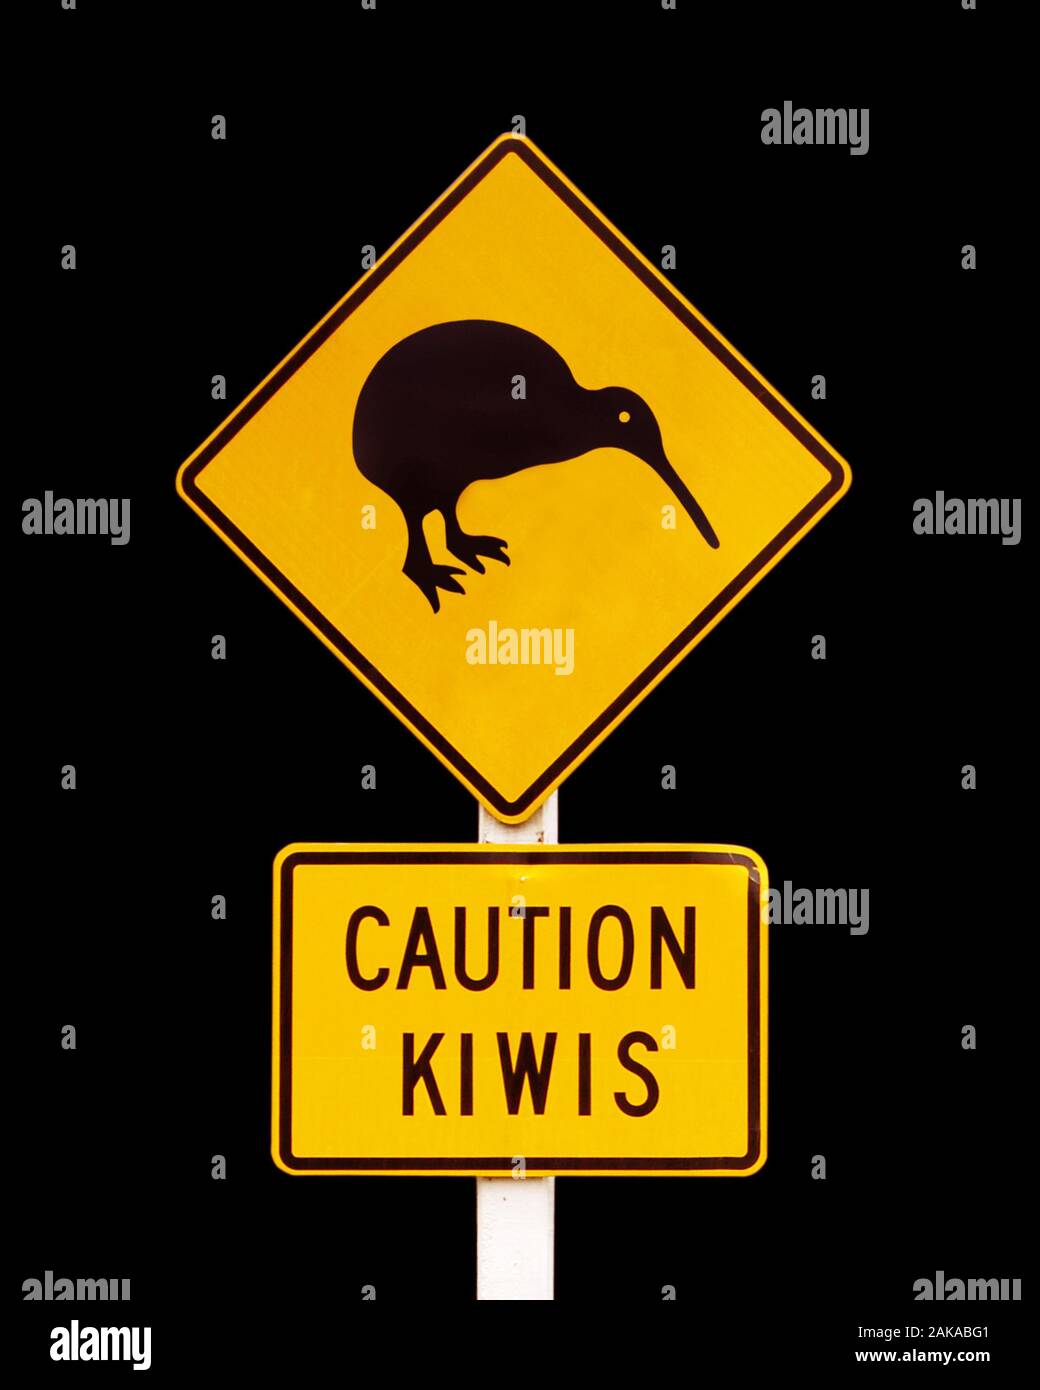 Caution kiwis, New Zealand iconic road sign on black background. Stock Photo